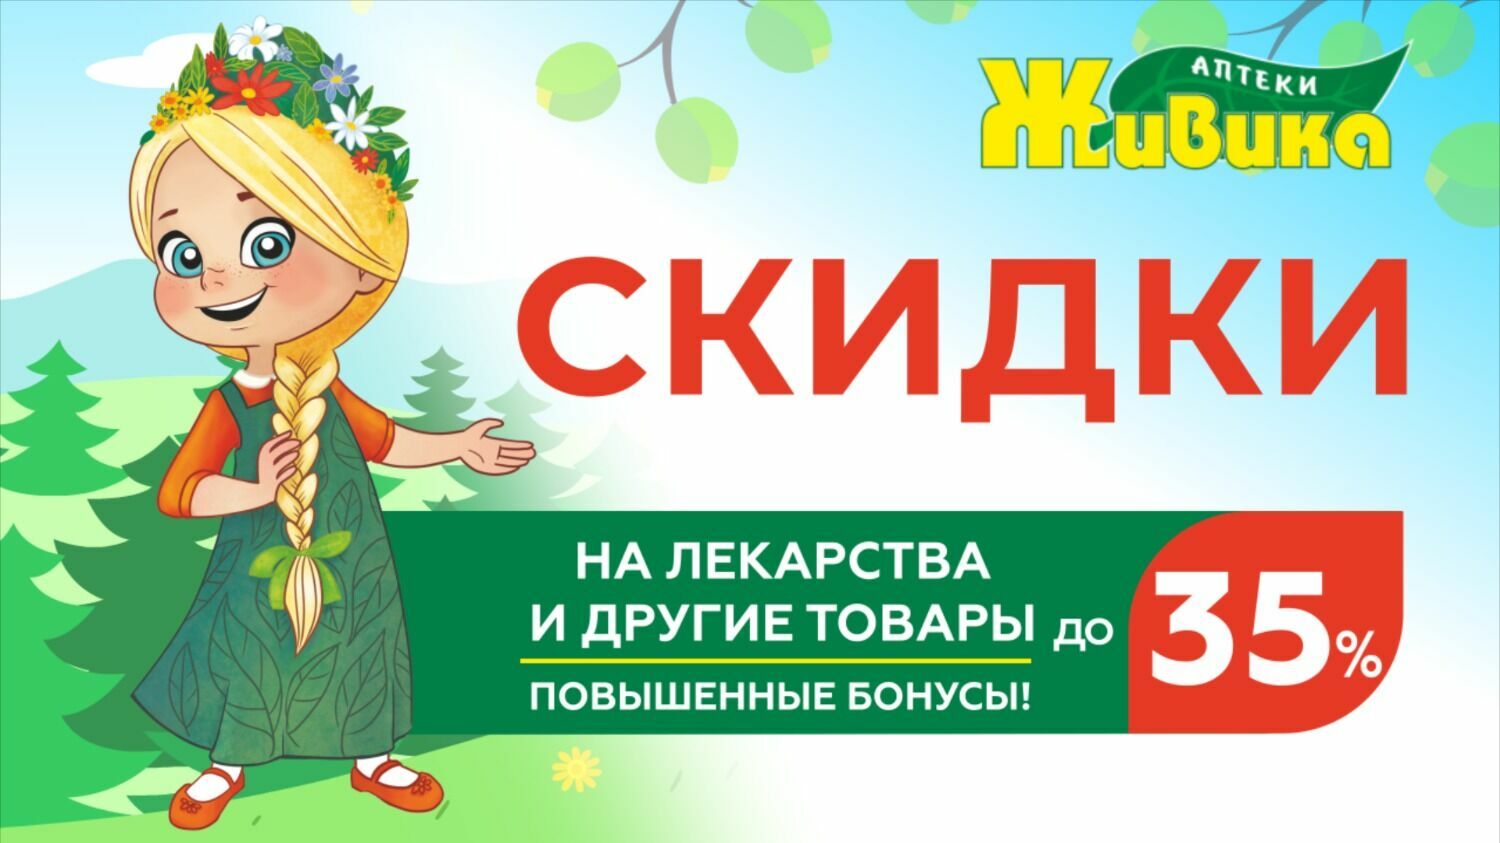 Весенние скидки до 35% на лекарственные средства в аптеках Живика в Казани